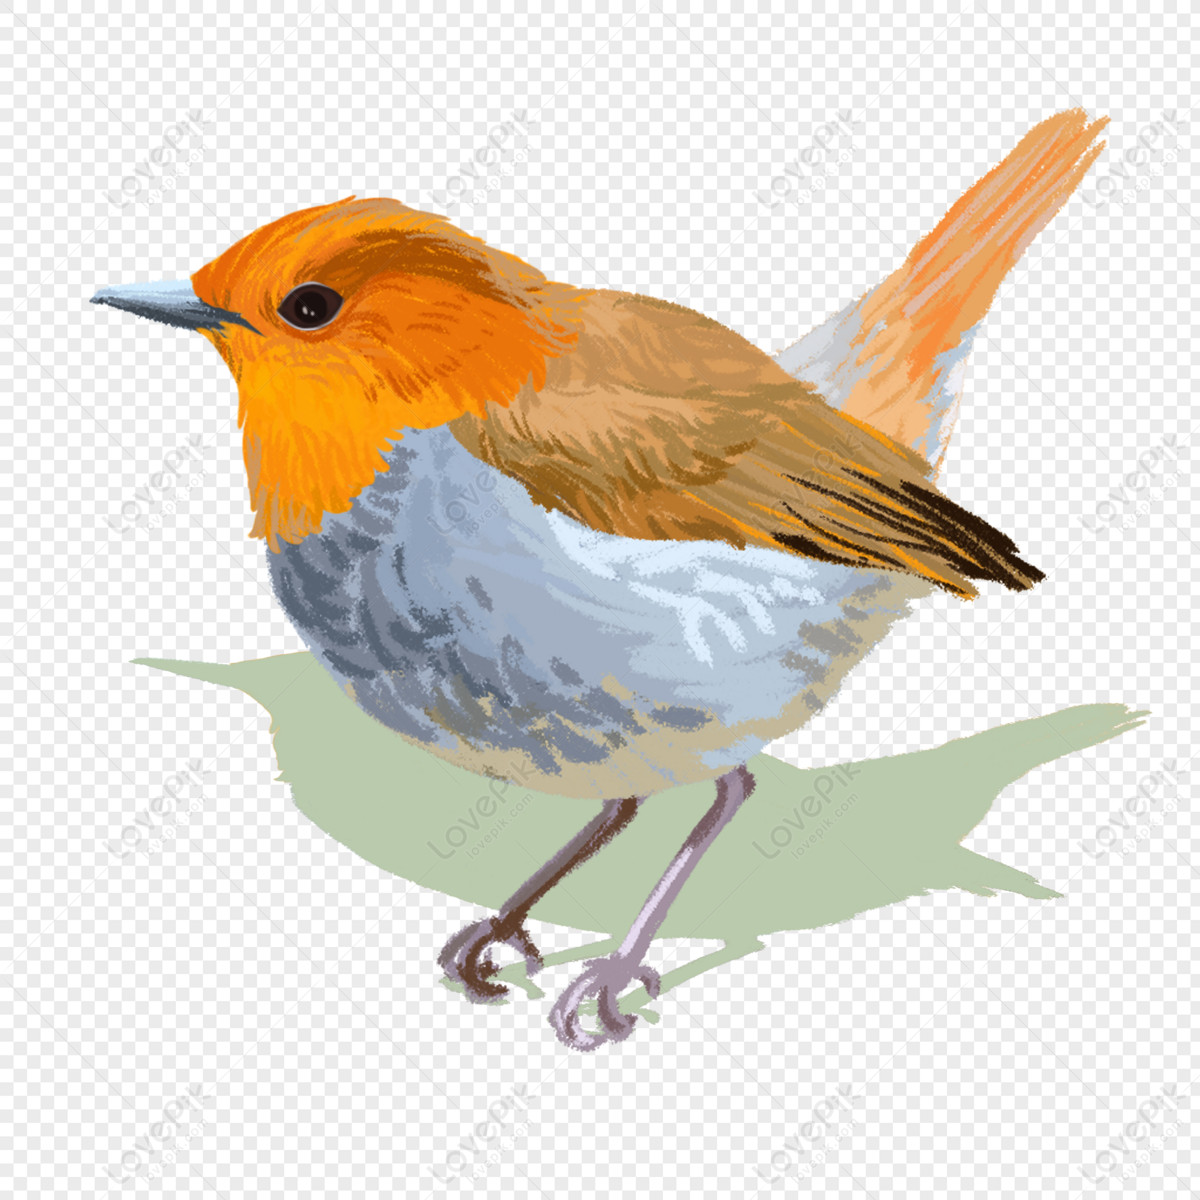 Hãy chiêm ngưỡng hình ảnh của chú chim robin tuyệt đẹp được đưa lên dưới dạng File PNG, để bạn có thể sử dụng tự do cho các tác phẩm của mình. Với chất lượng hình ảnh sắc nét, bạn sẽ không thể rời mắt khỏi nó!